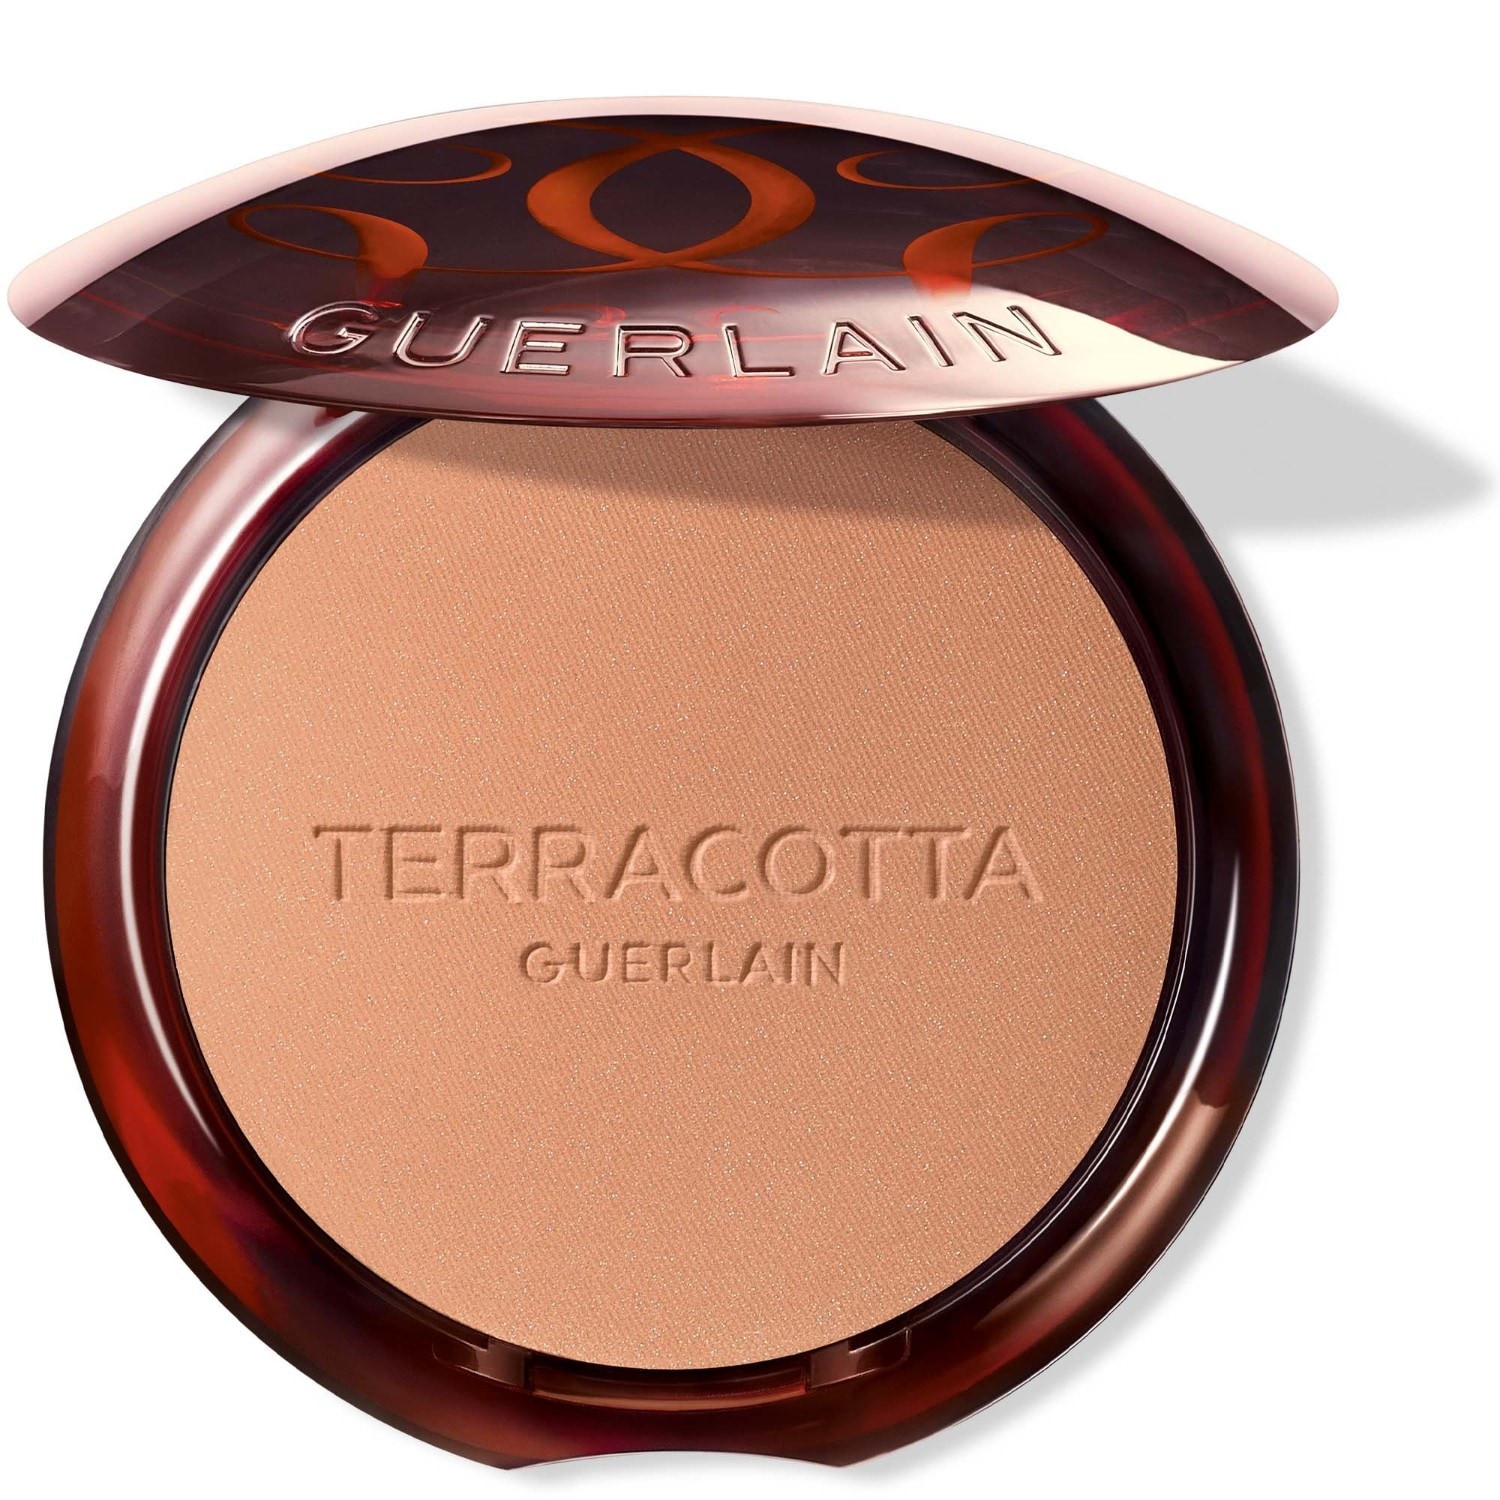 Guerlain Terracotta compact powder, 0 - Light cool